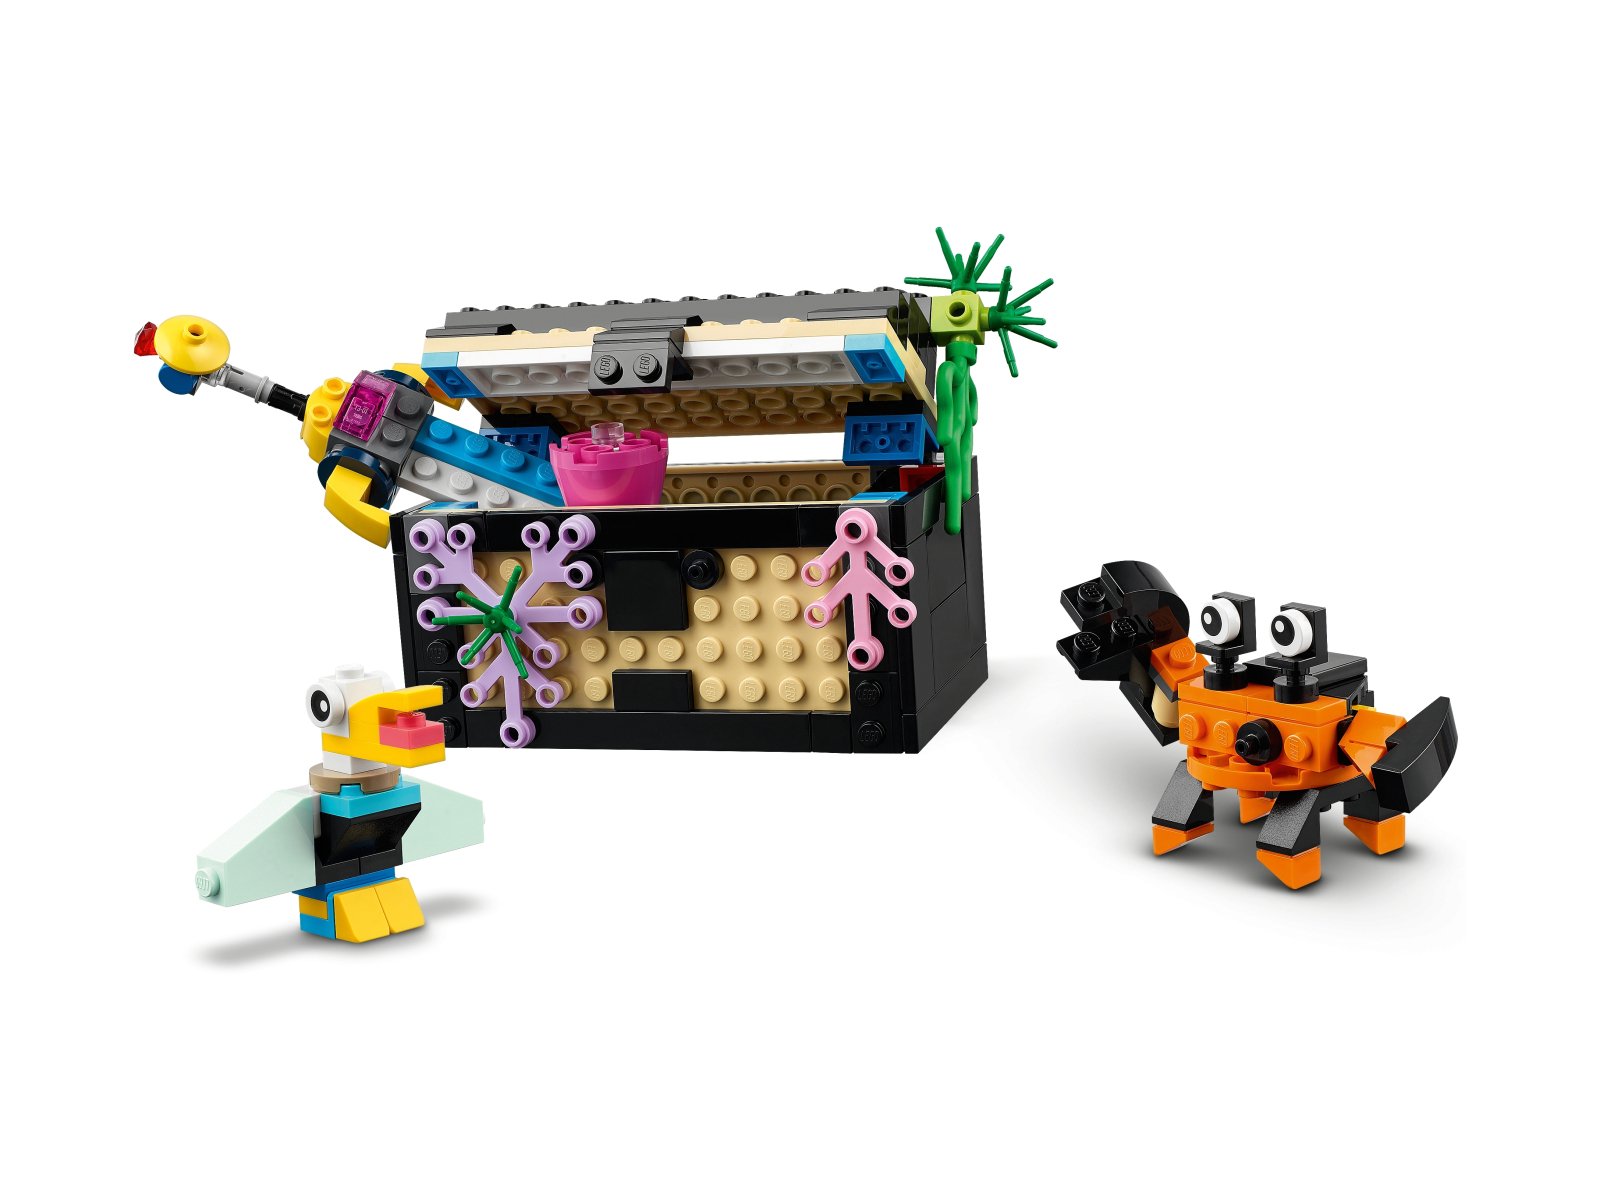 LEGO 31122 Akwarium